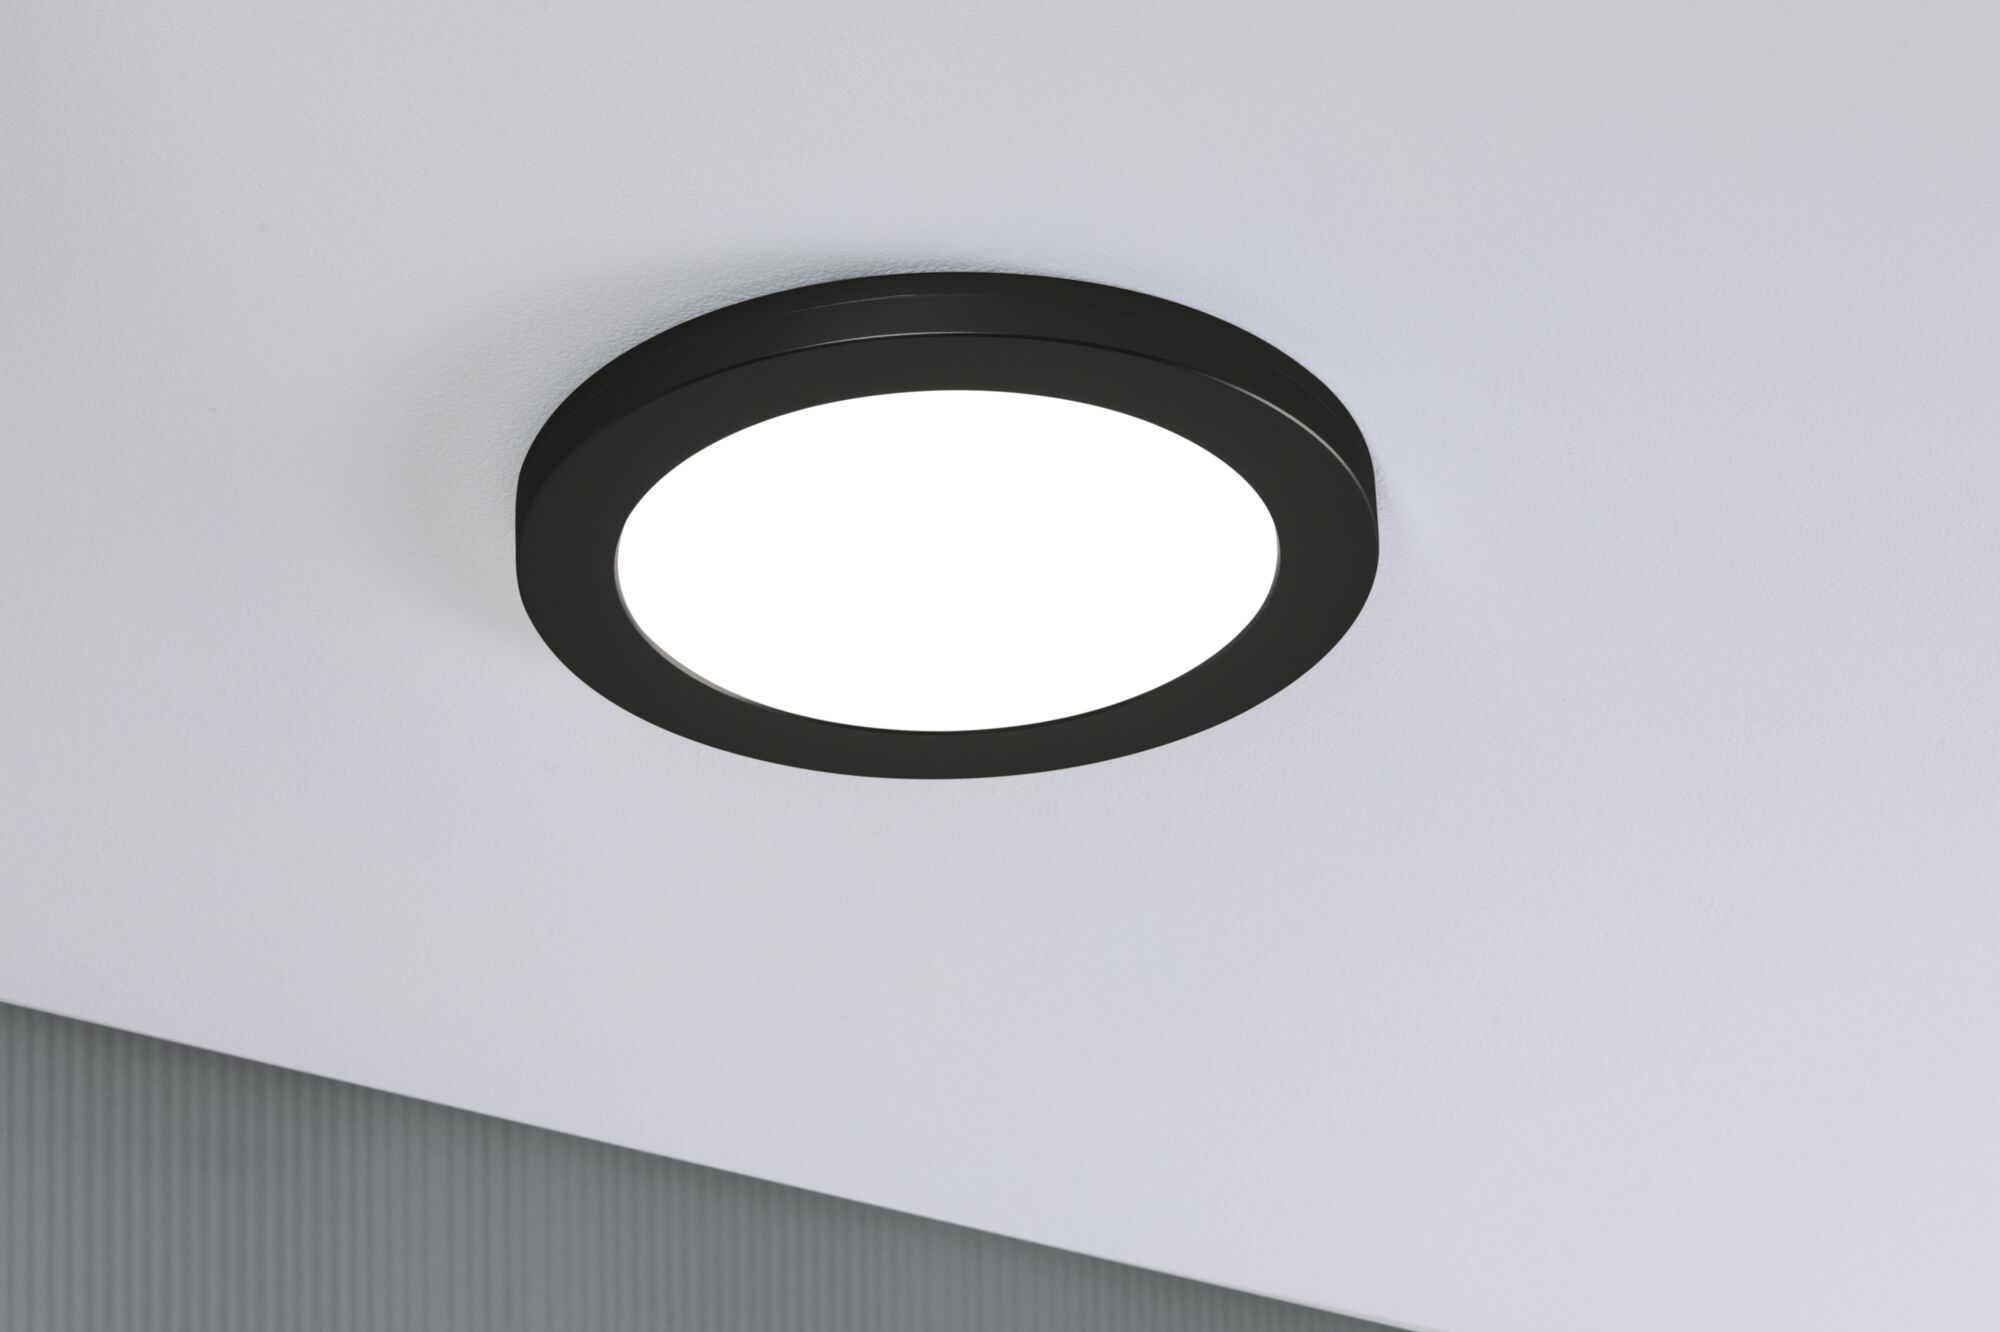 Paulmann 93097 LED Einbaupanel 2in1 225mm rund Schwarz Cover-it neutralweiß